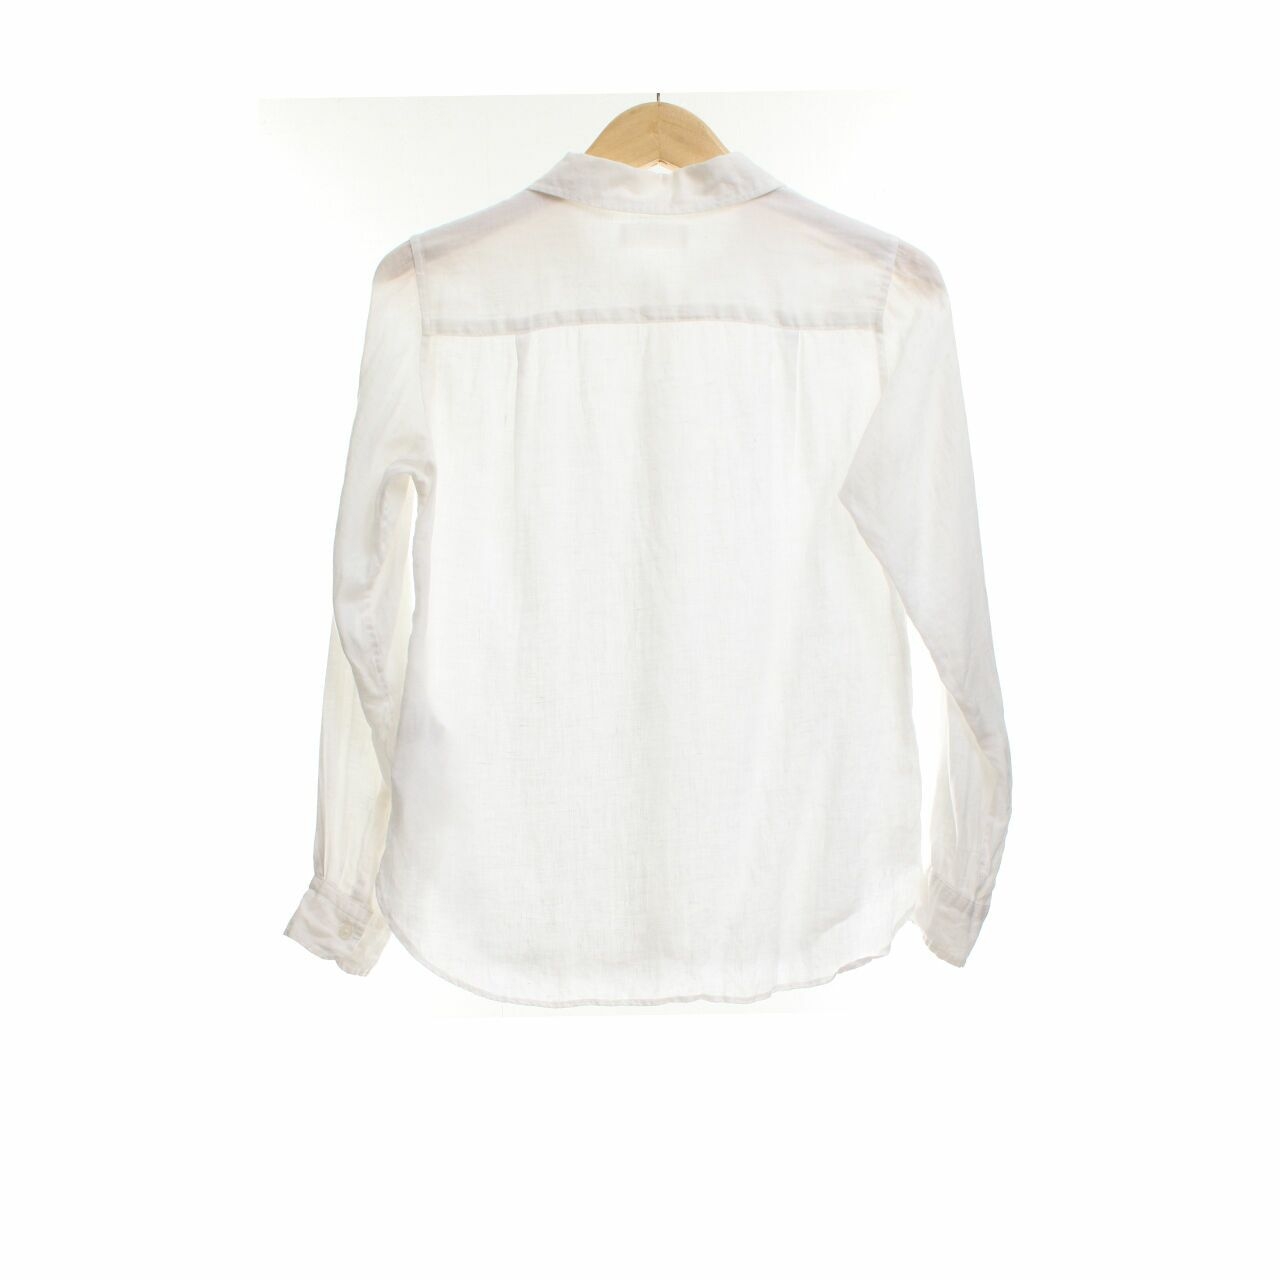 UNIQLO White Shirt